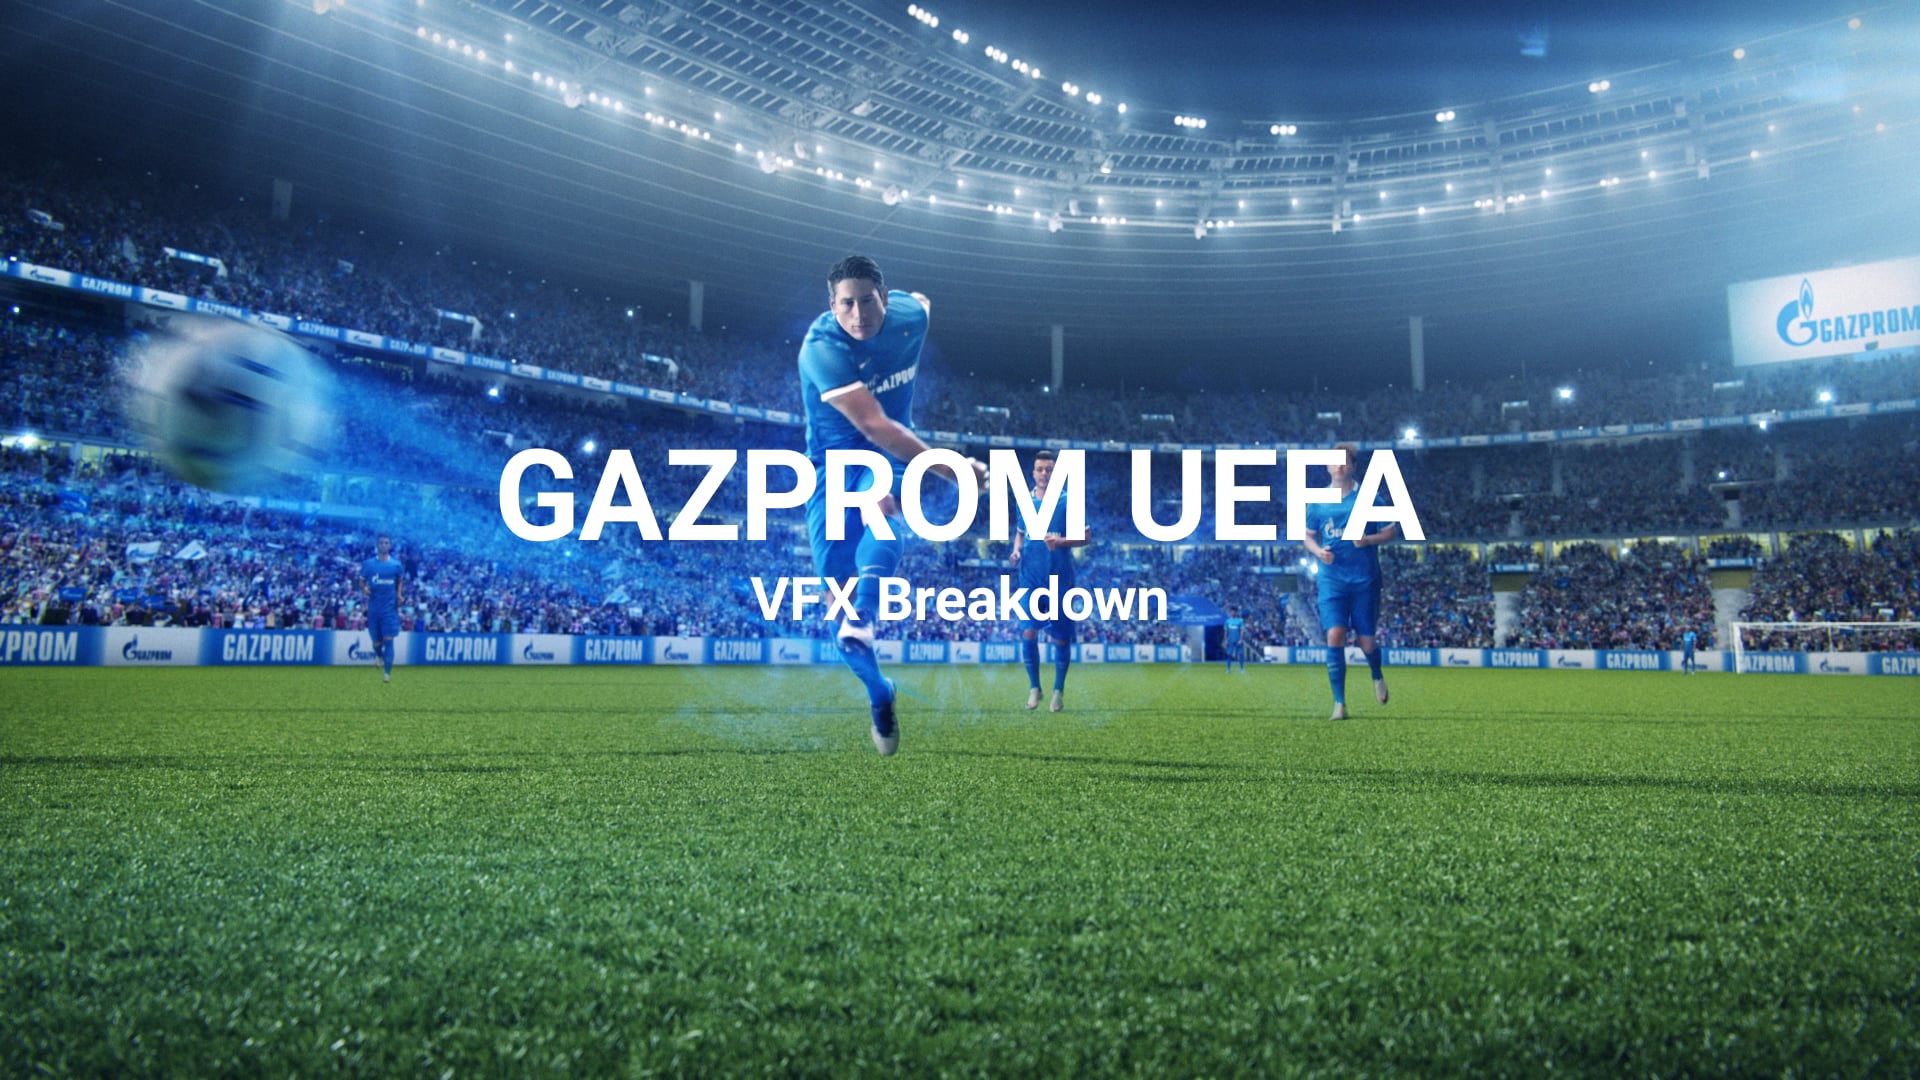 GAZPROM UEFA - VFX Breakdown